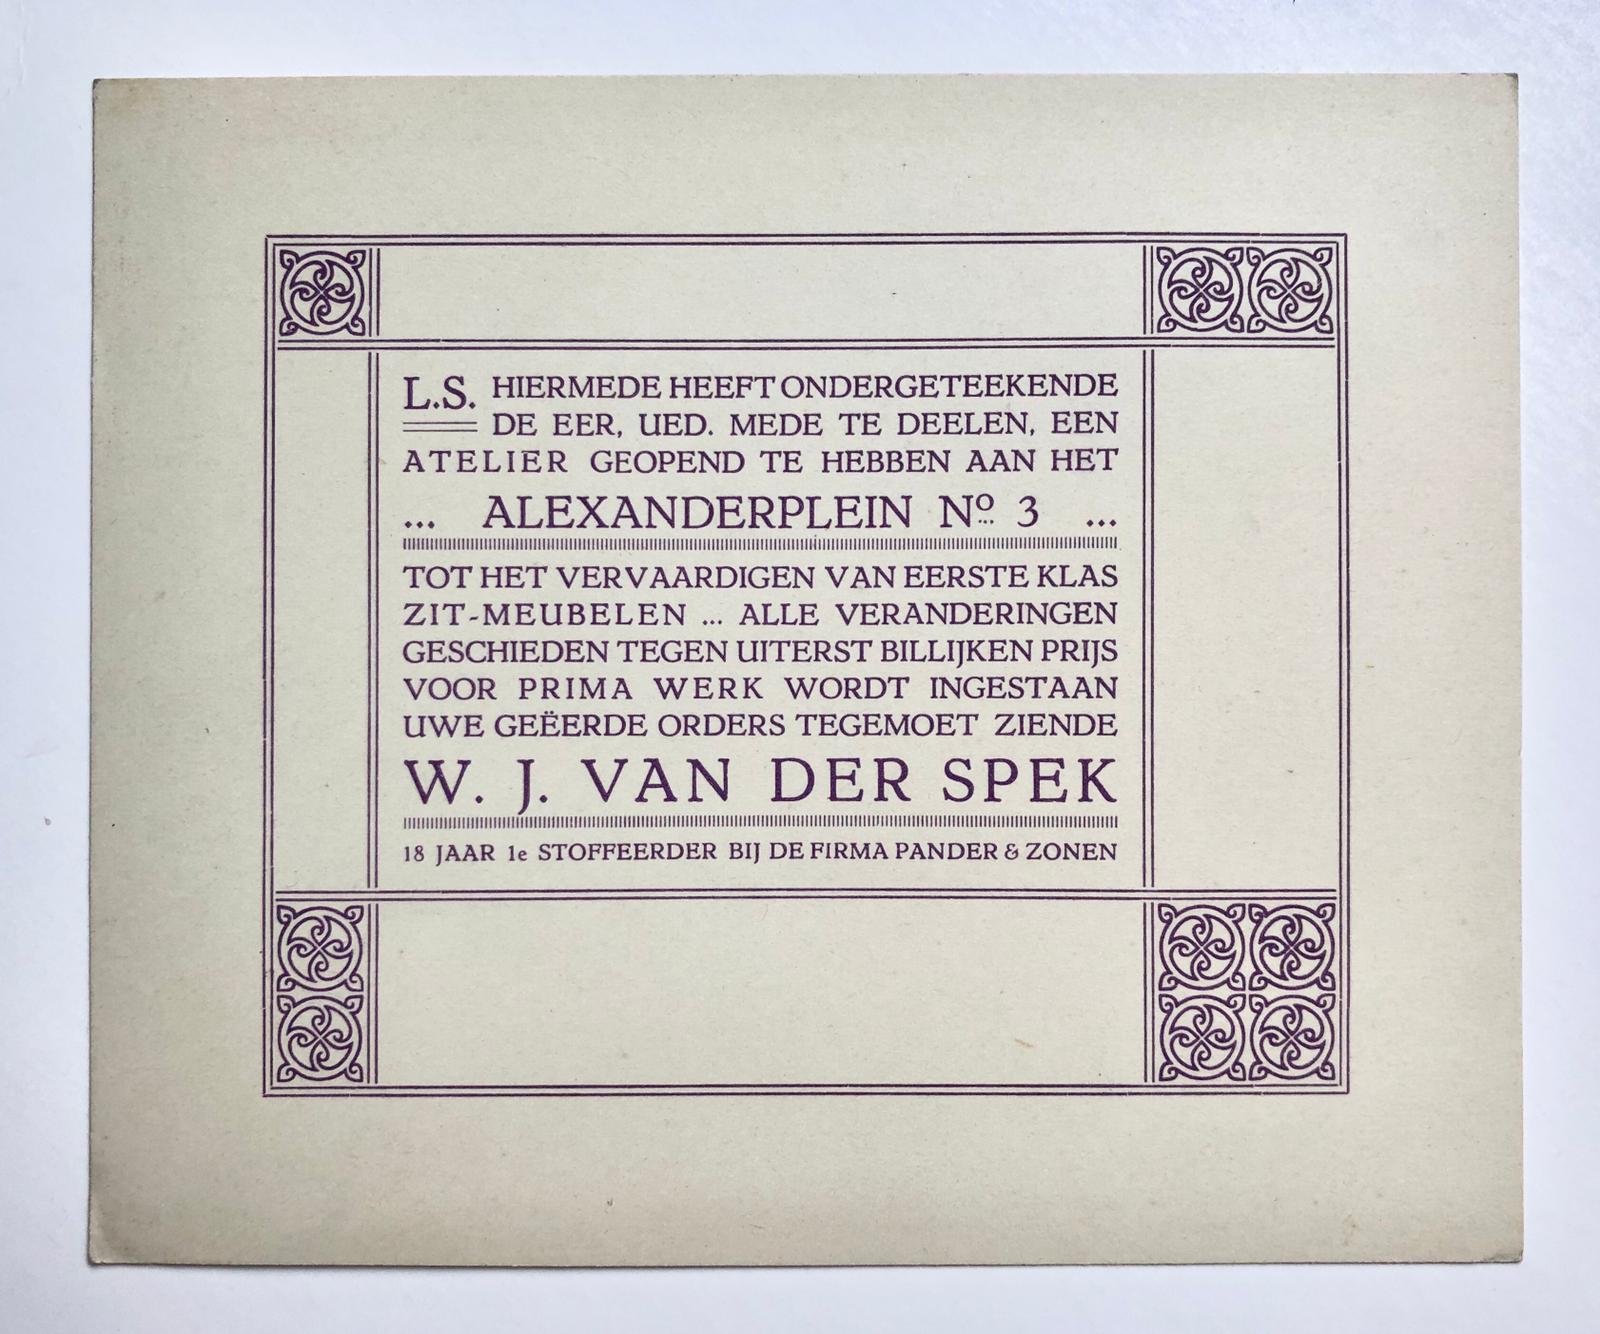  - [Paper art] Bedrijfskaart van W.J. van der Spek, stoffeerder te 's-Gravenhage, Alexanderstraat 3 Den Haag, ca. 1930.